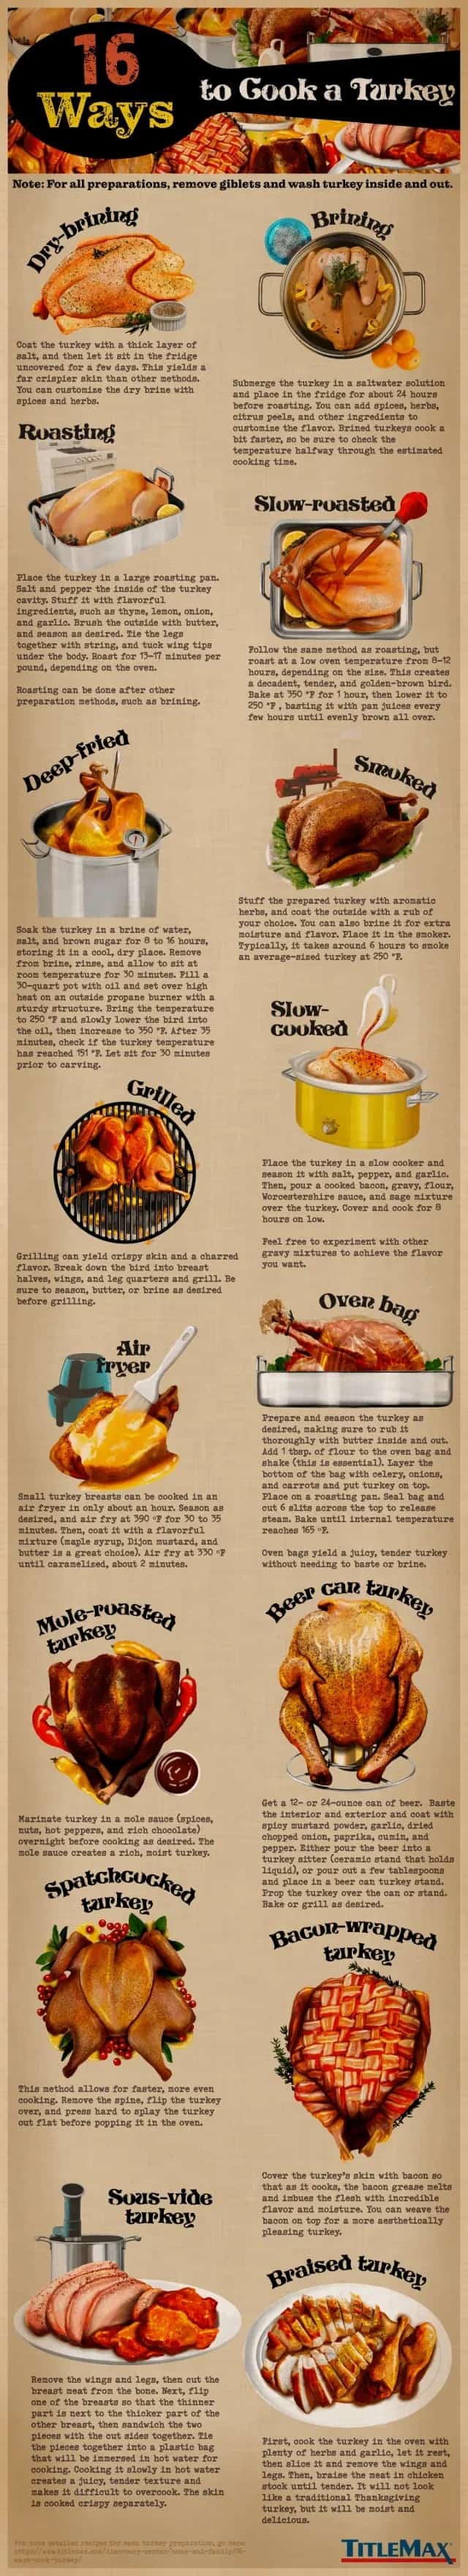 16-ways-cook-turkey-2_c-min